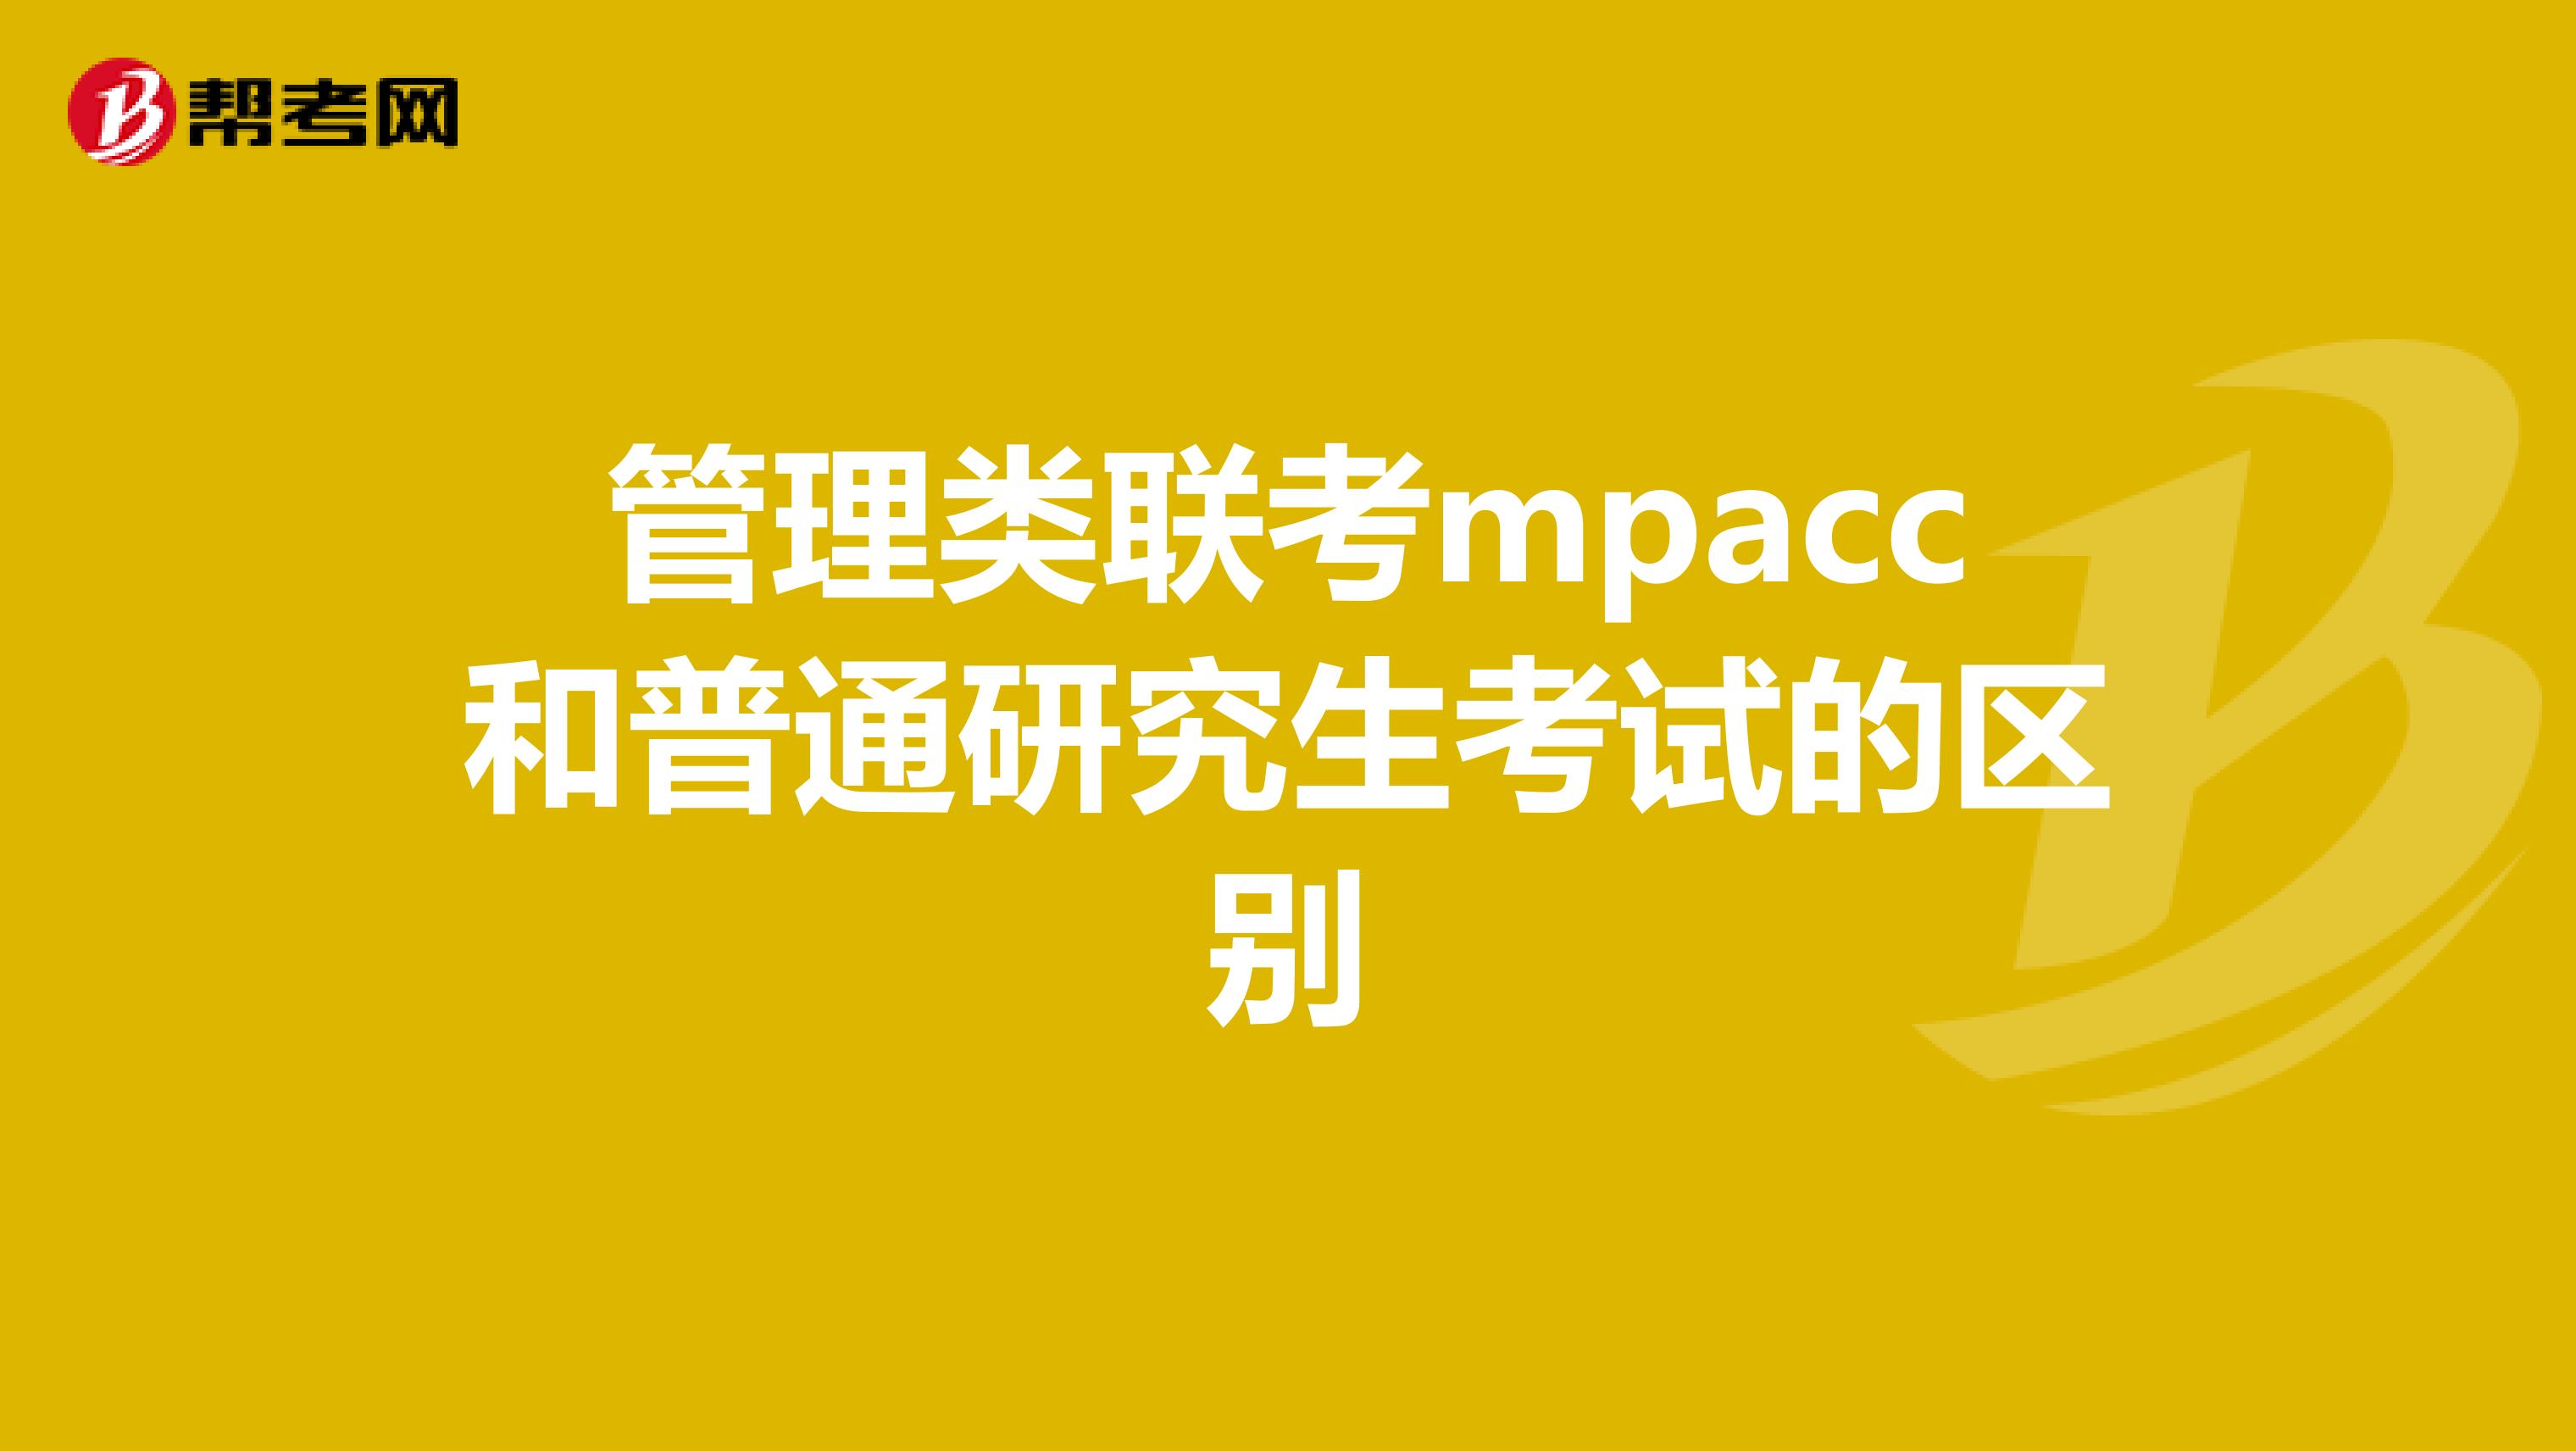 管理类联考mpacc和普通研究生考试的区别